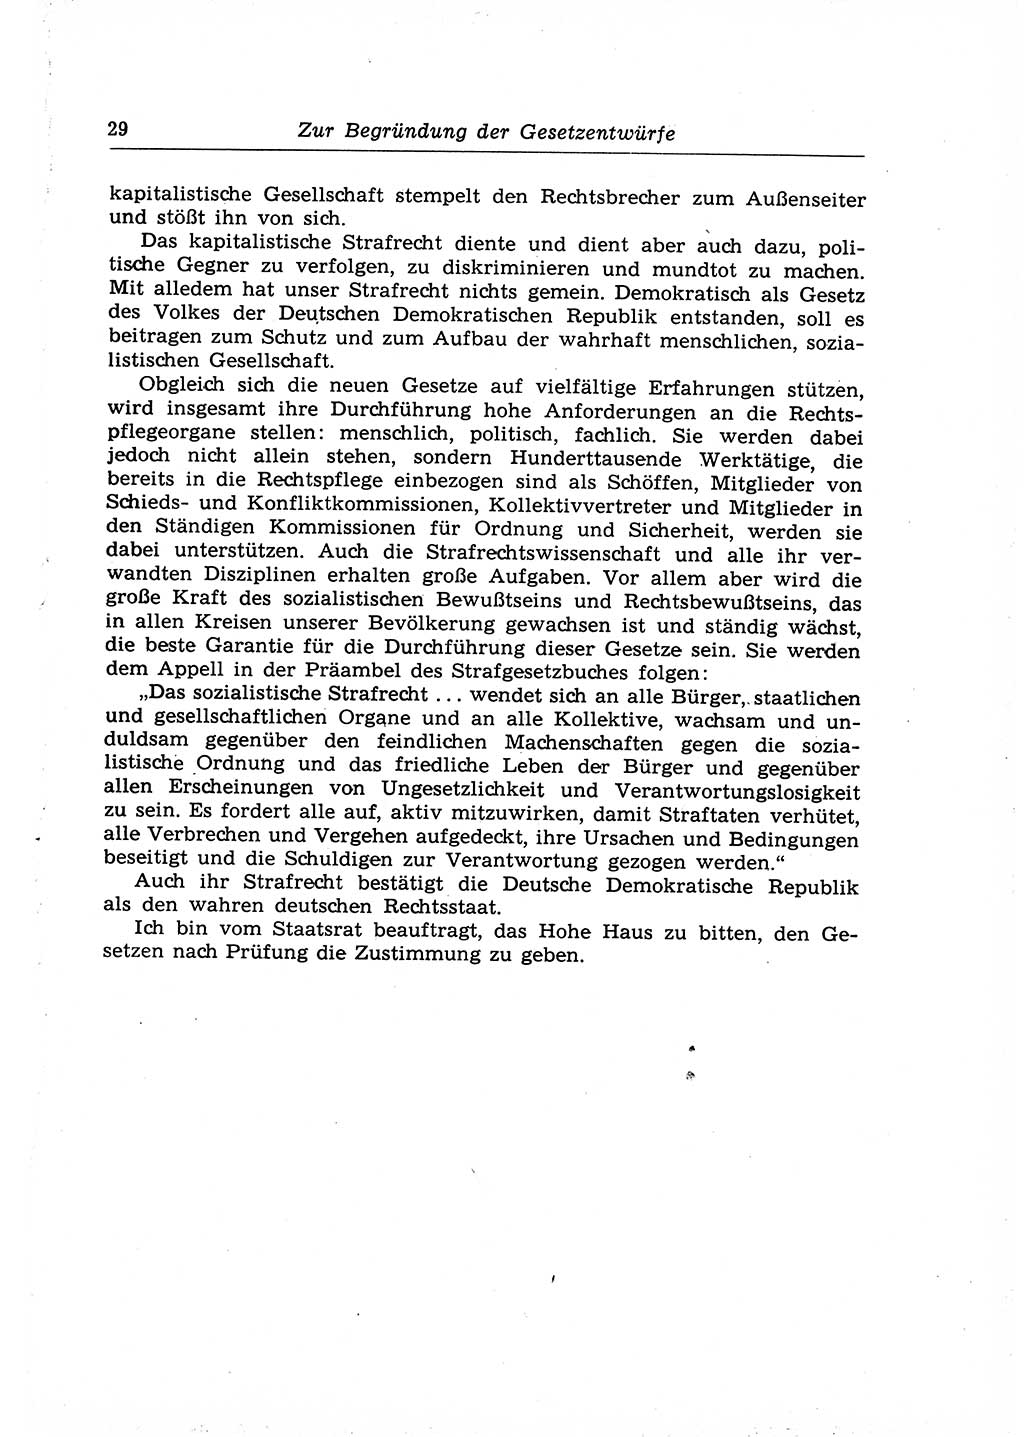 Strafrecht der Deutschen Demokratischen Republik (DDR), Lehrkommentar zum Strafgesetzbuch (StGB), Allgemeiner Teil 1969, Seite 29 (Strafr. DDR Lehrkomm. StGB AT 1969, S. 29)